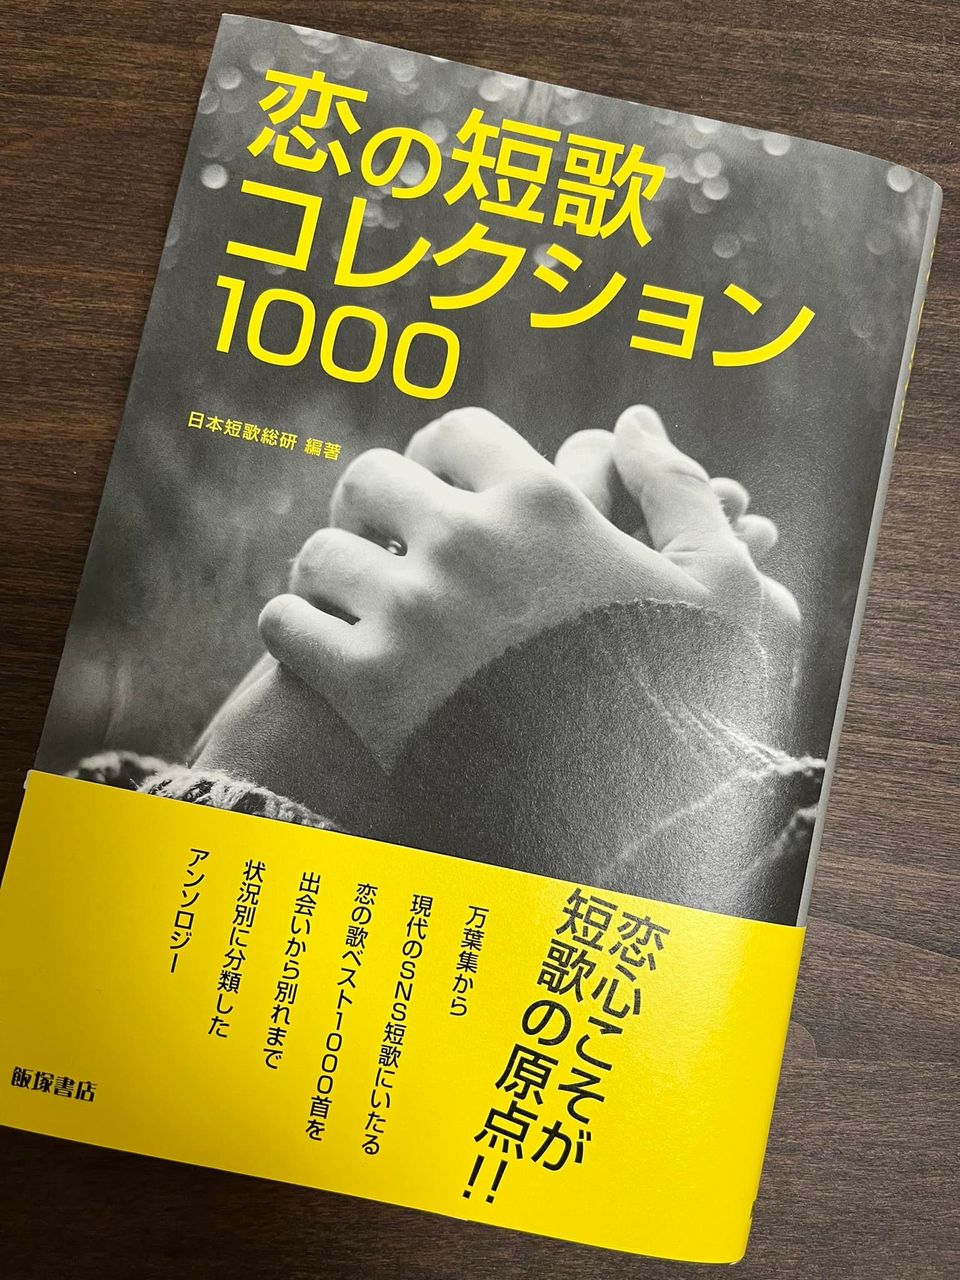 『恋の短歌 コレクション1000』（日本短歌総研編著・飯塚書店刊）に三首